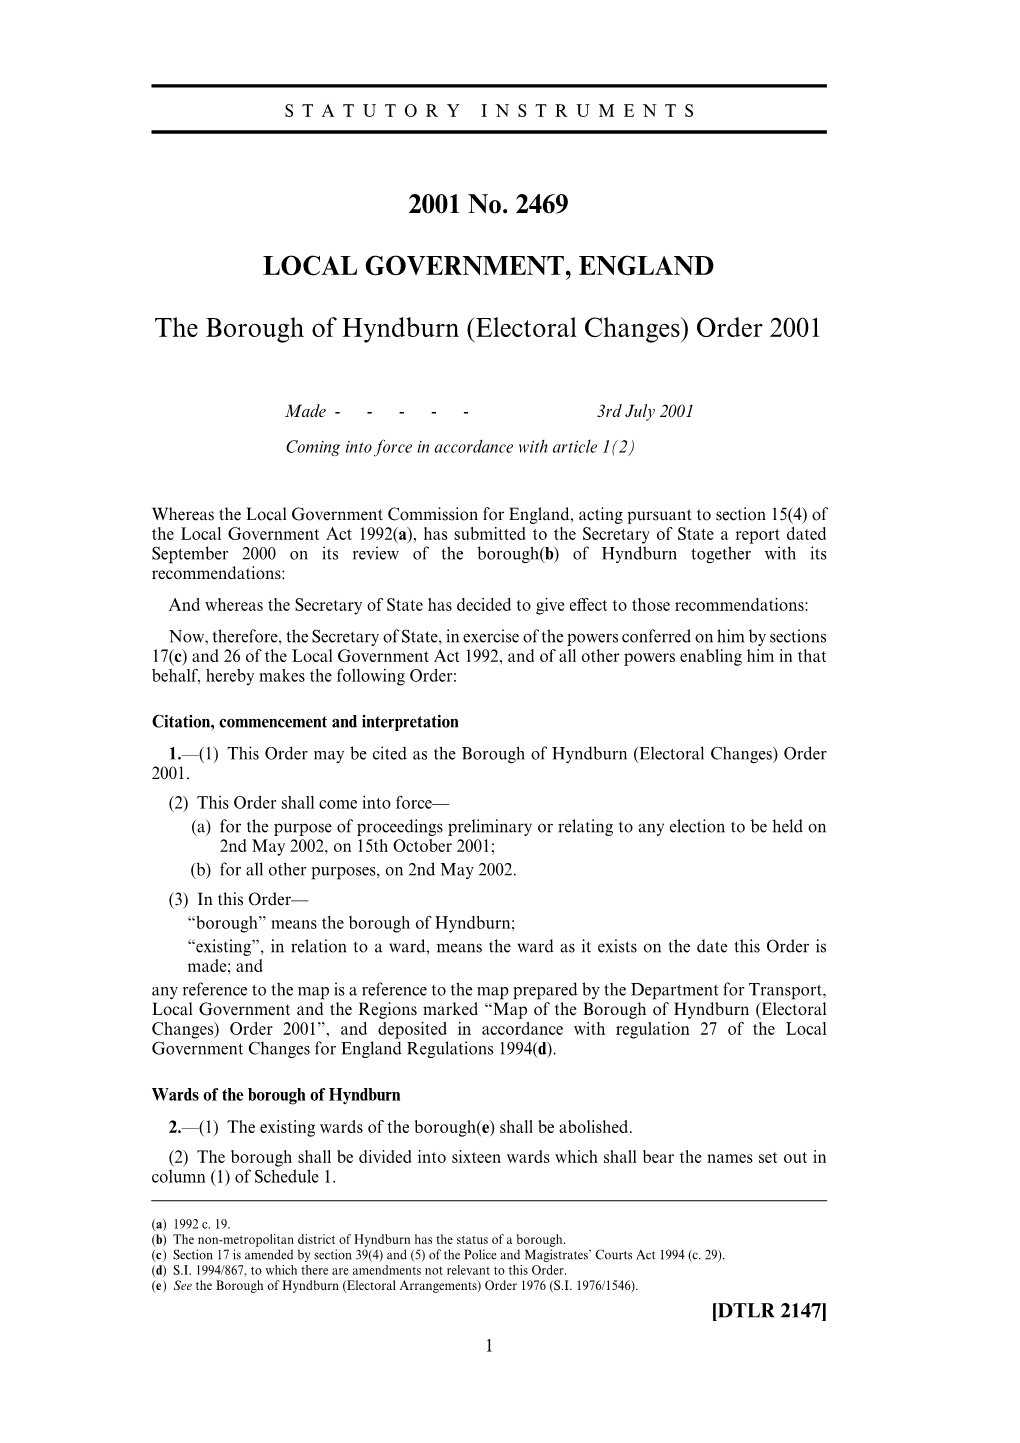 2001 No. 2469 LOCAL GOVERNMENT, ENGLAND The